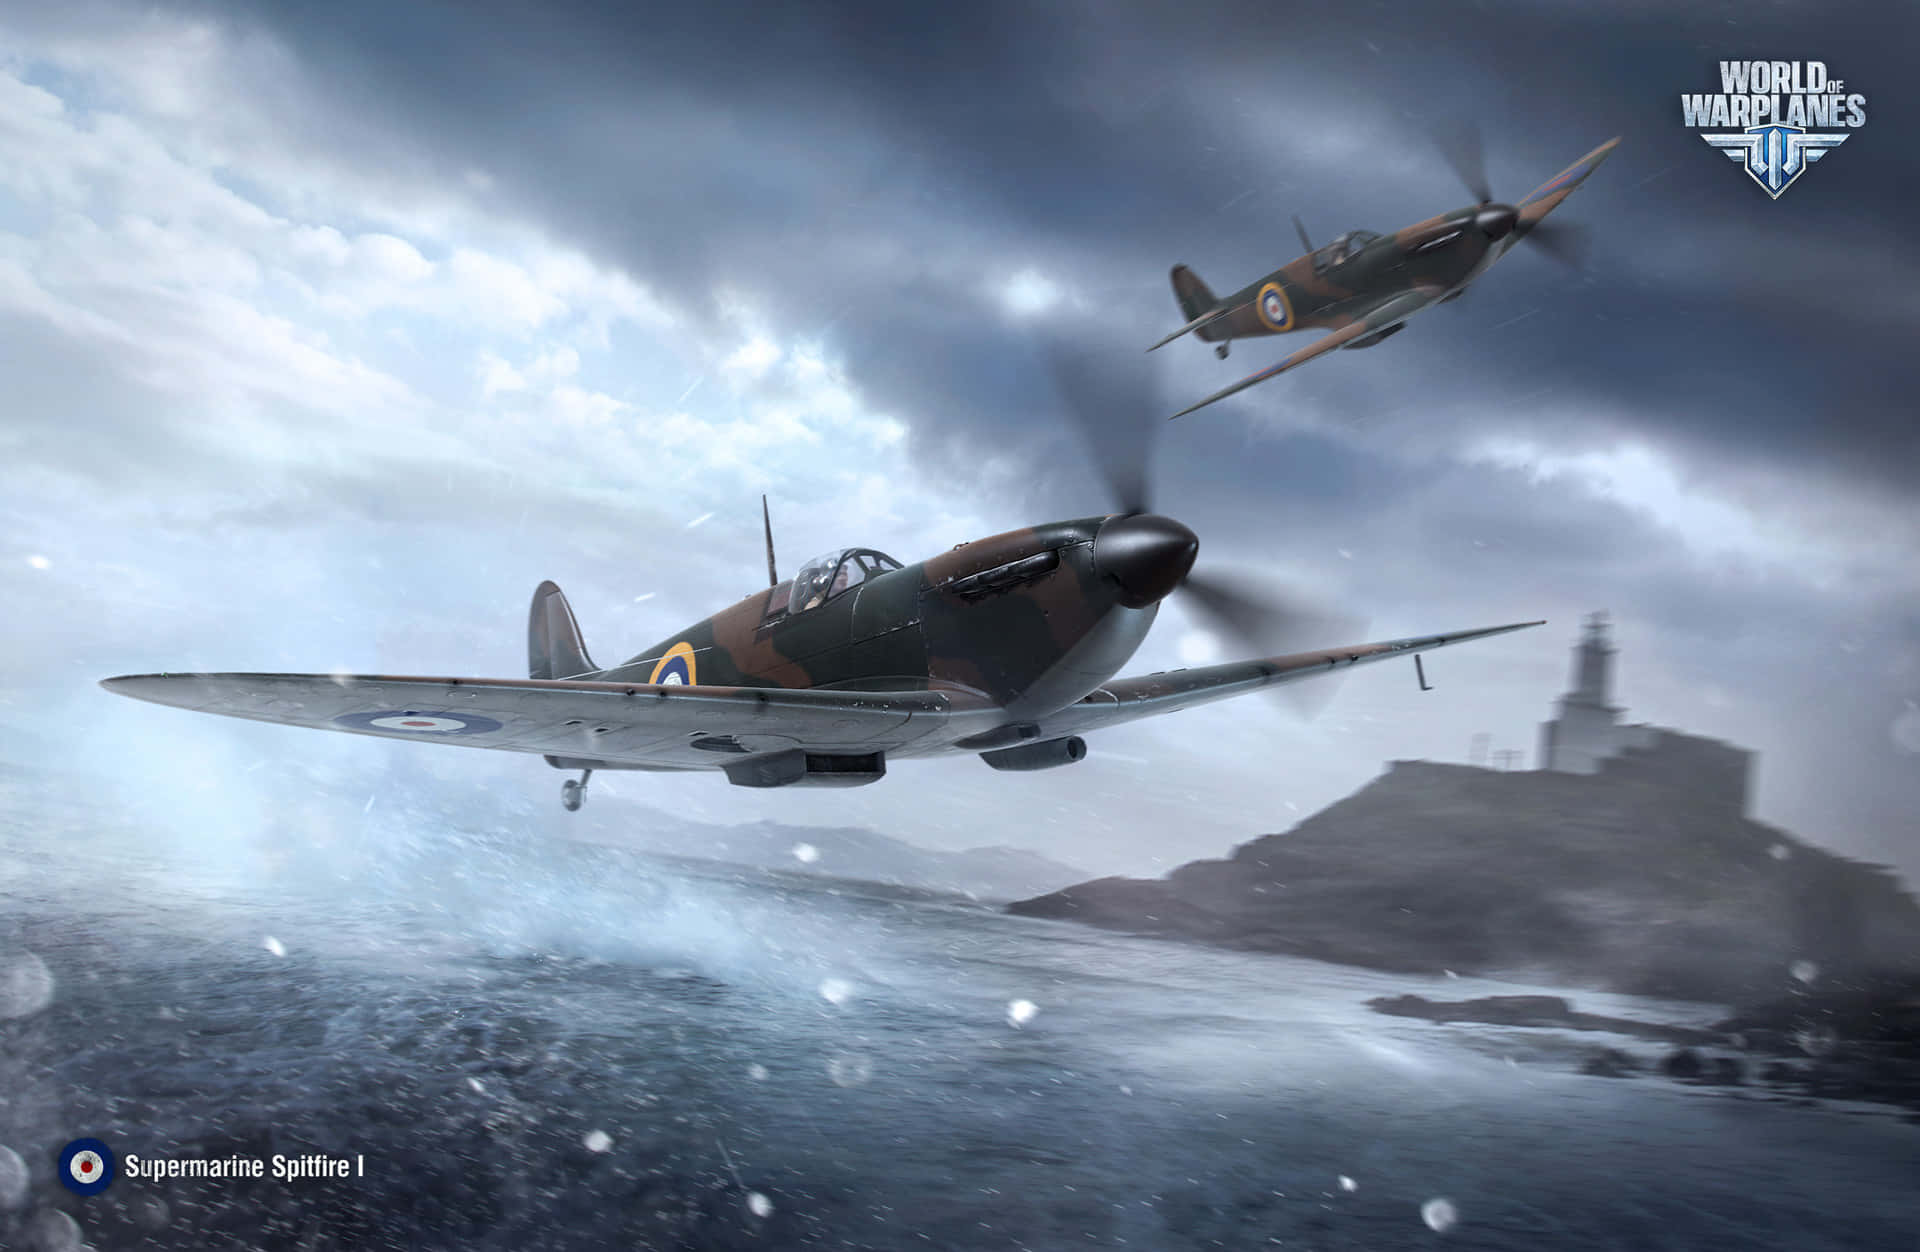 Unavión De Guerra Spitfire De La Segunda Guerra Mundial Surcando El Cielo. Fondo de pantalla